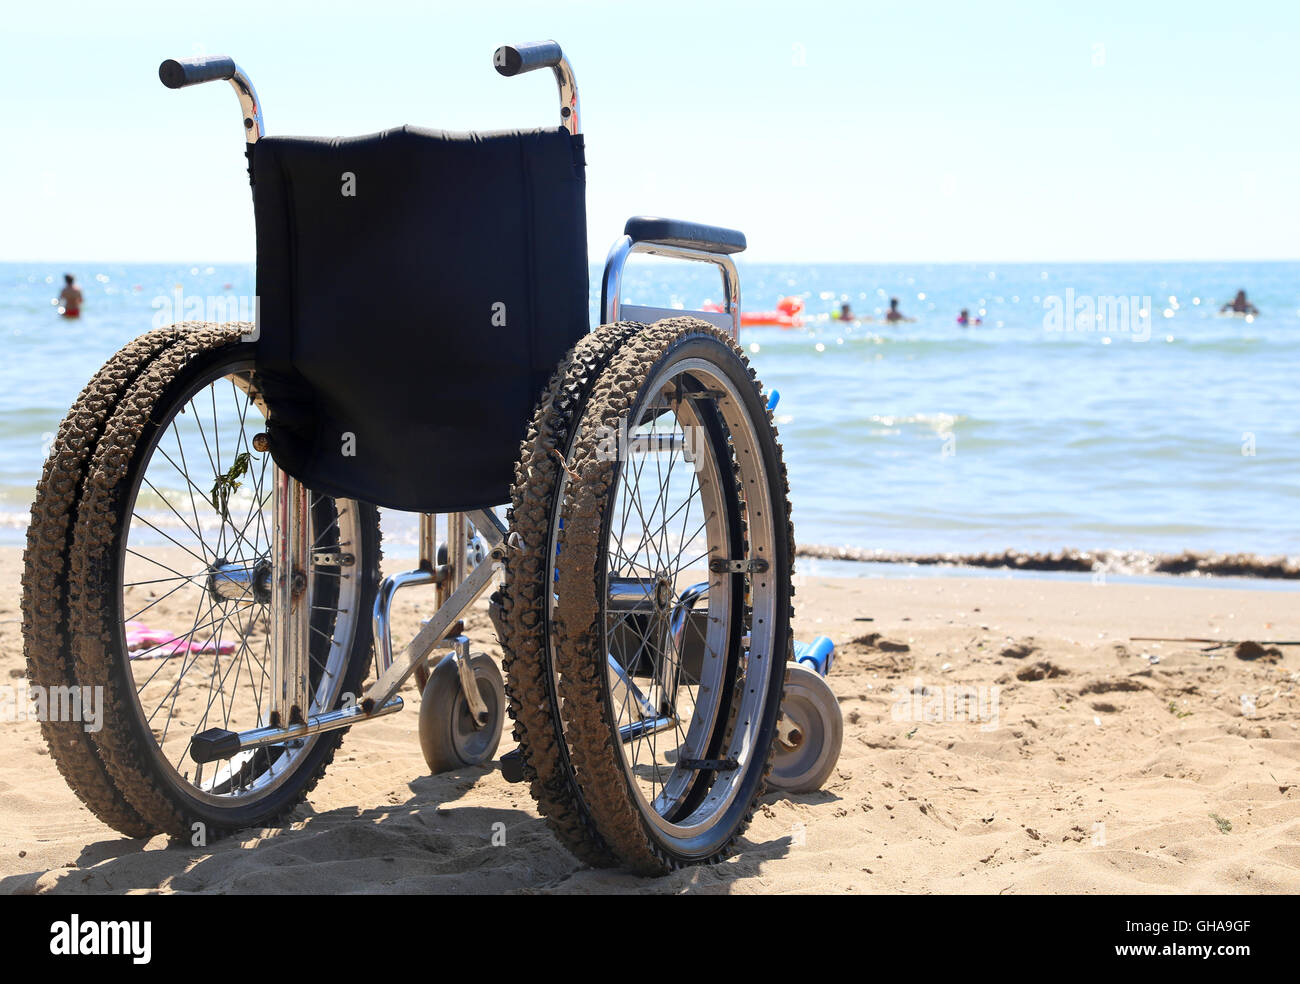 Sedia a rotelle alluminio sulla sabbia della spiaggia del mare Foto Stock